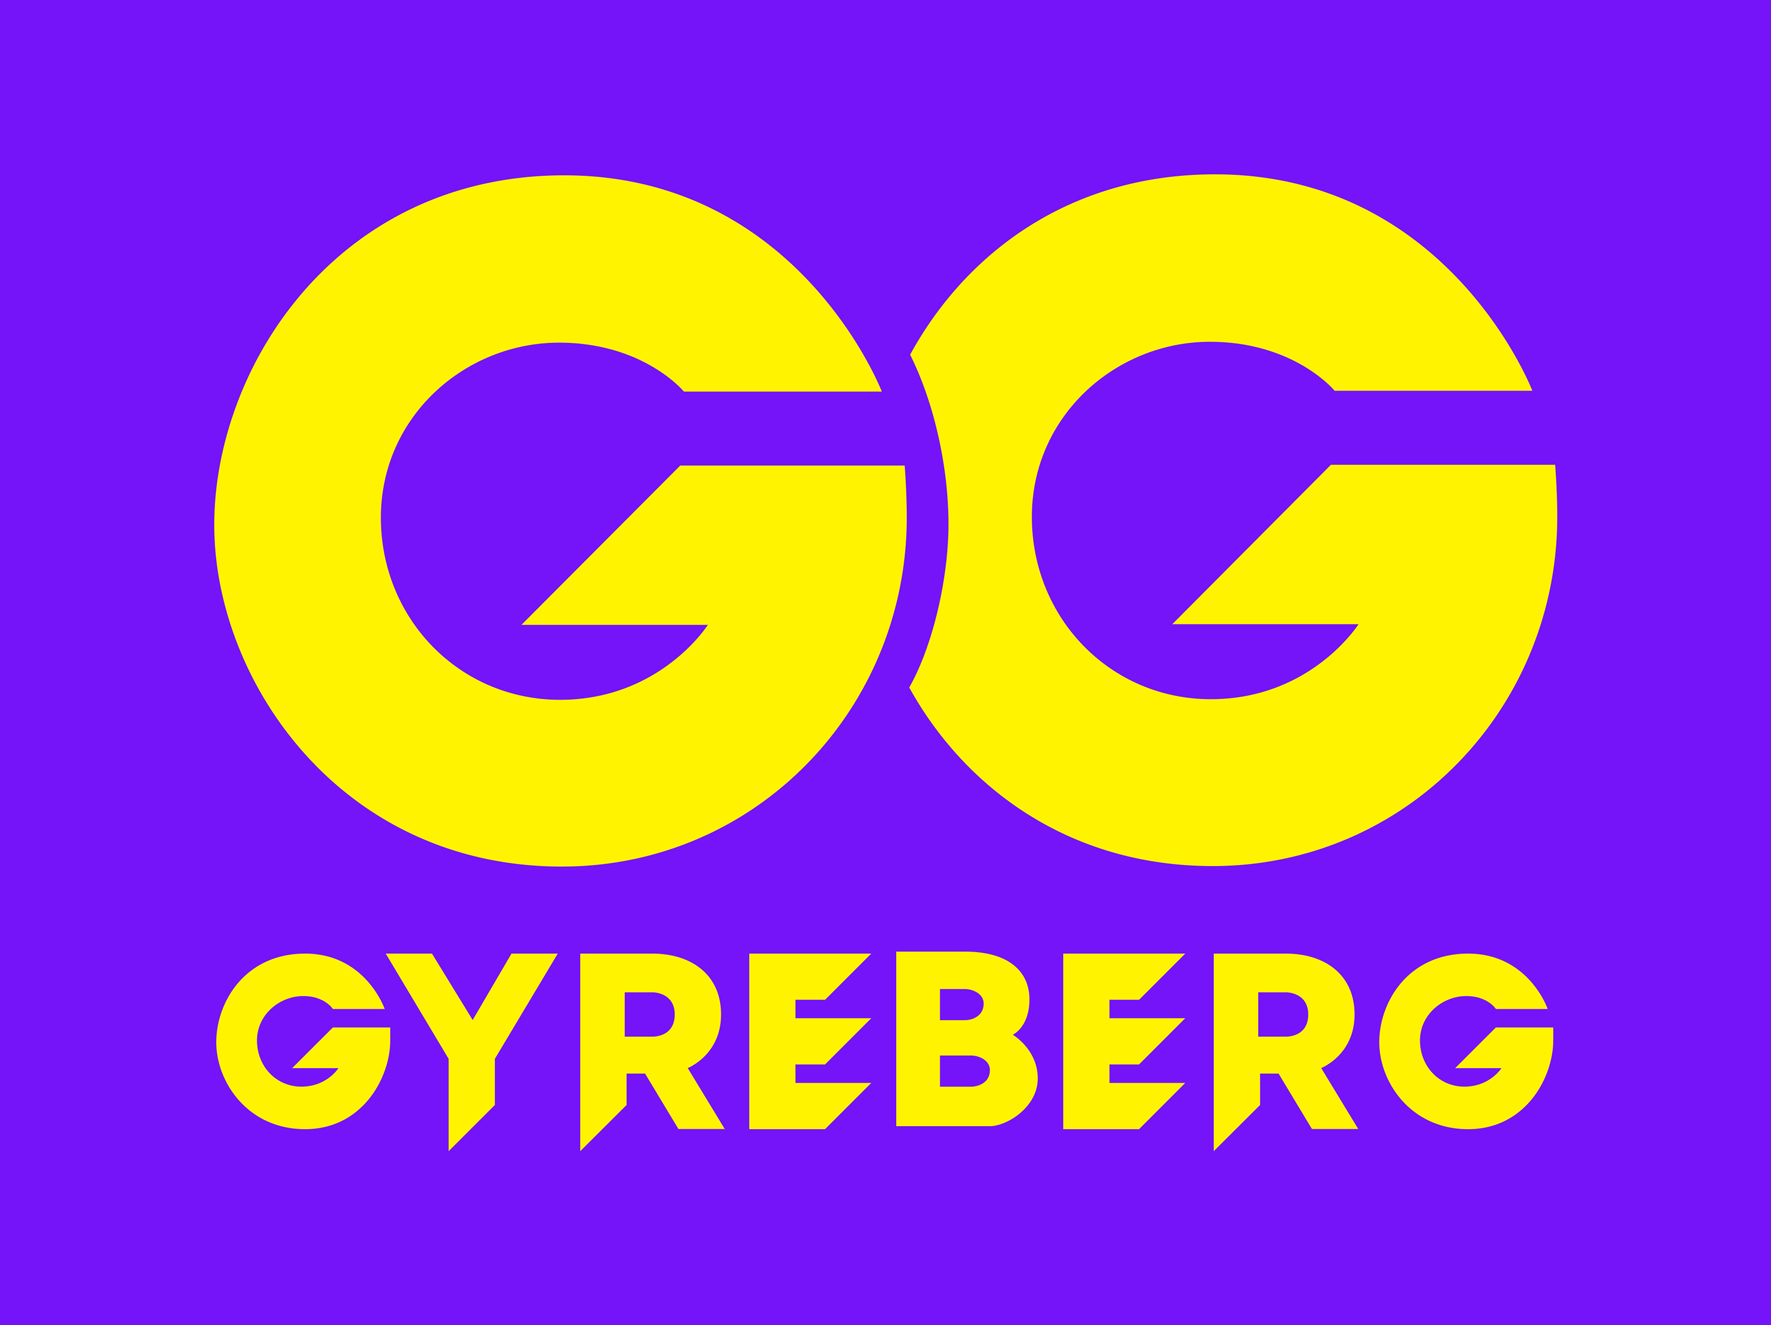 GYREBERG